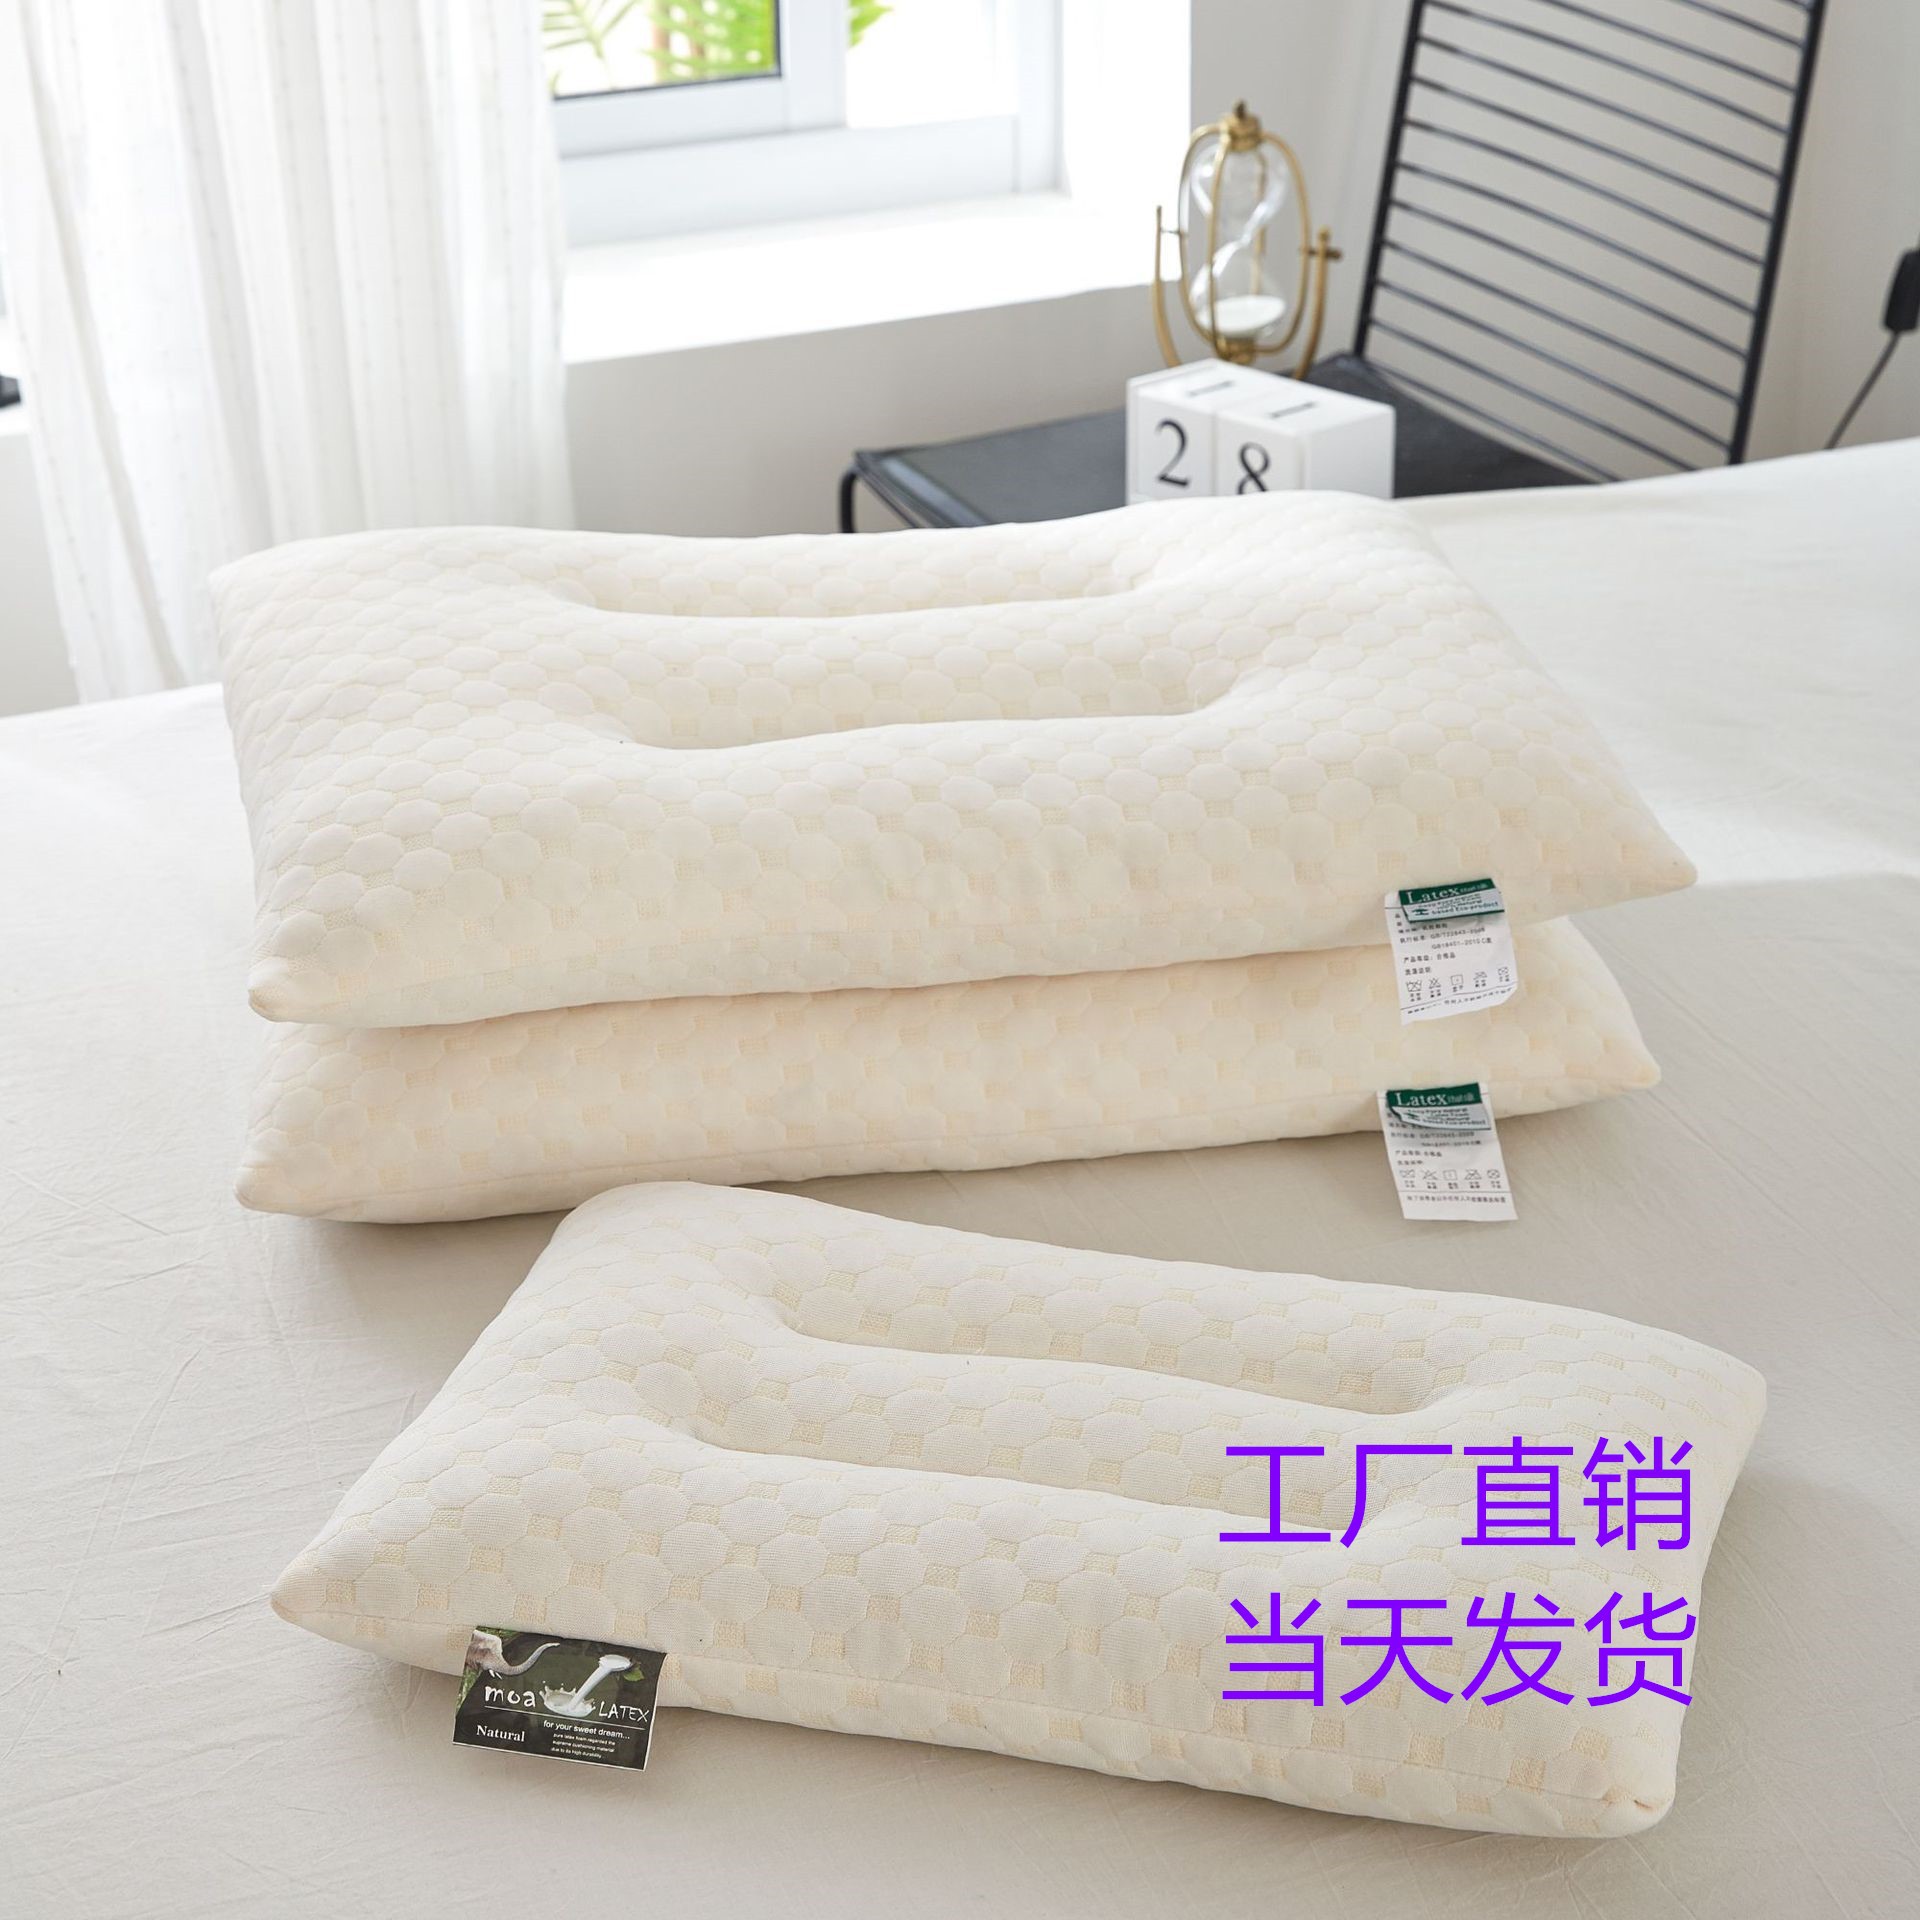 泰国乳胶枕 亲肤棉乳胶记忆枕 水立方定型乳胶枕头礼品枕芯